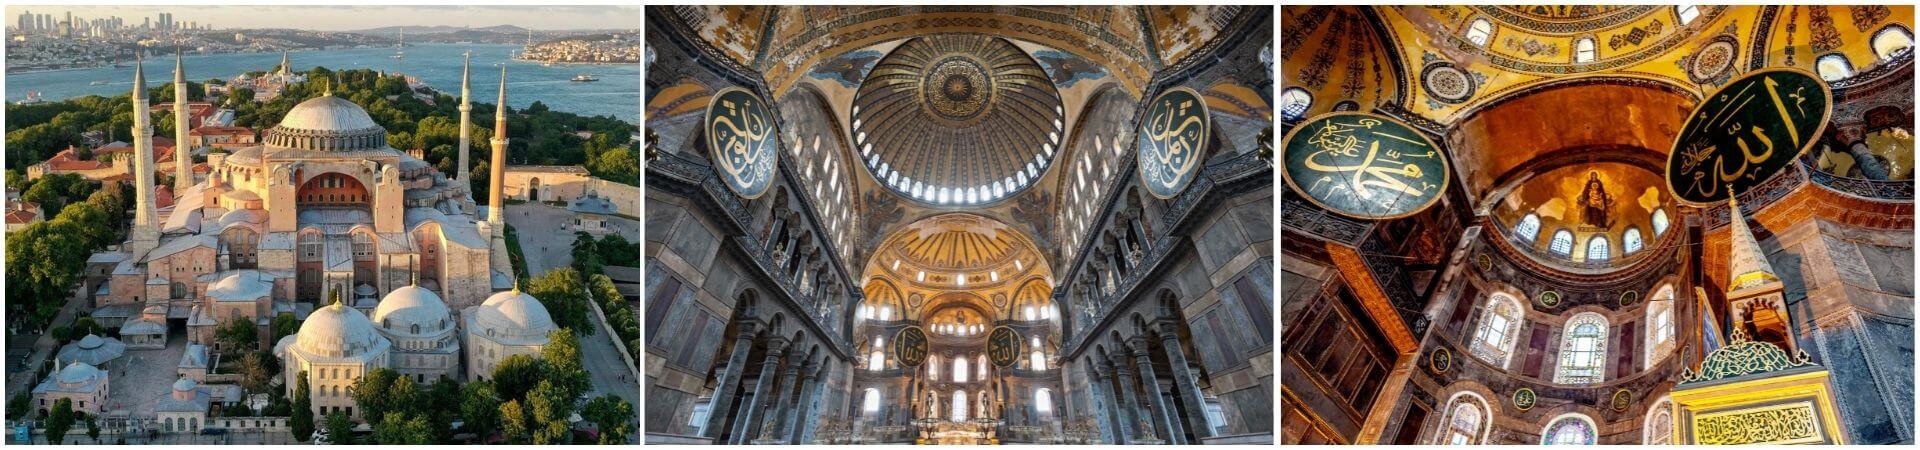 Führung durch die Hagia Sophia